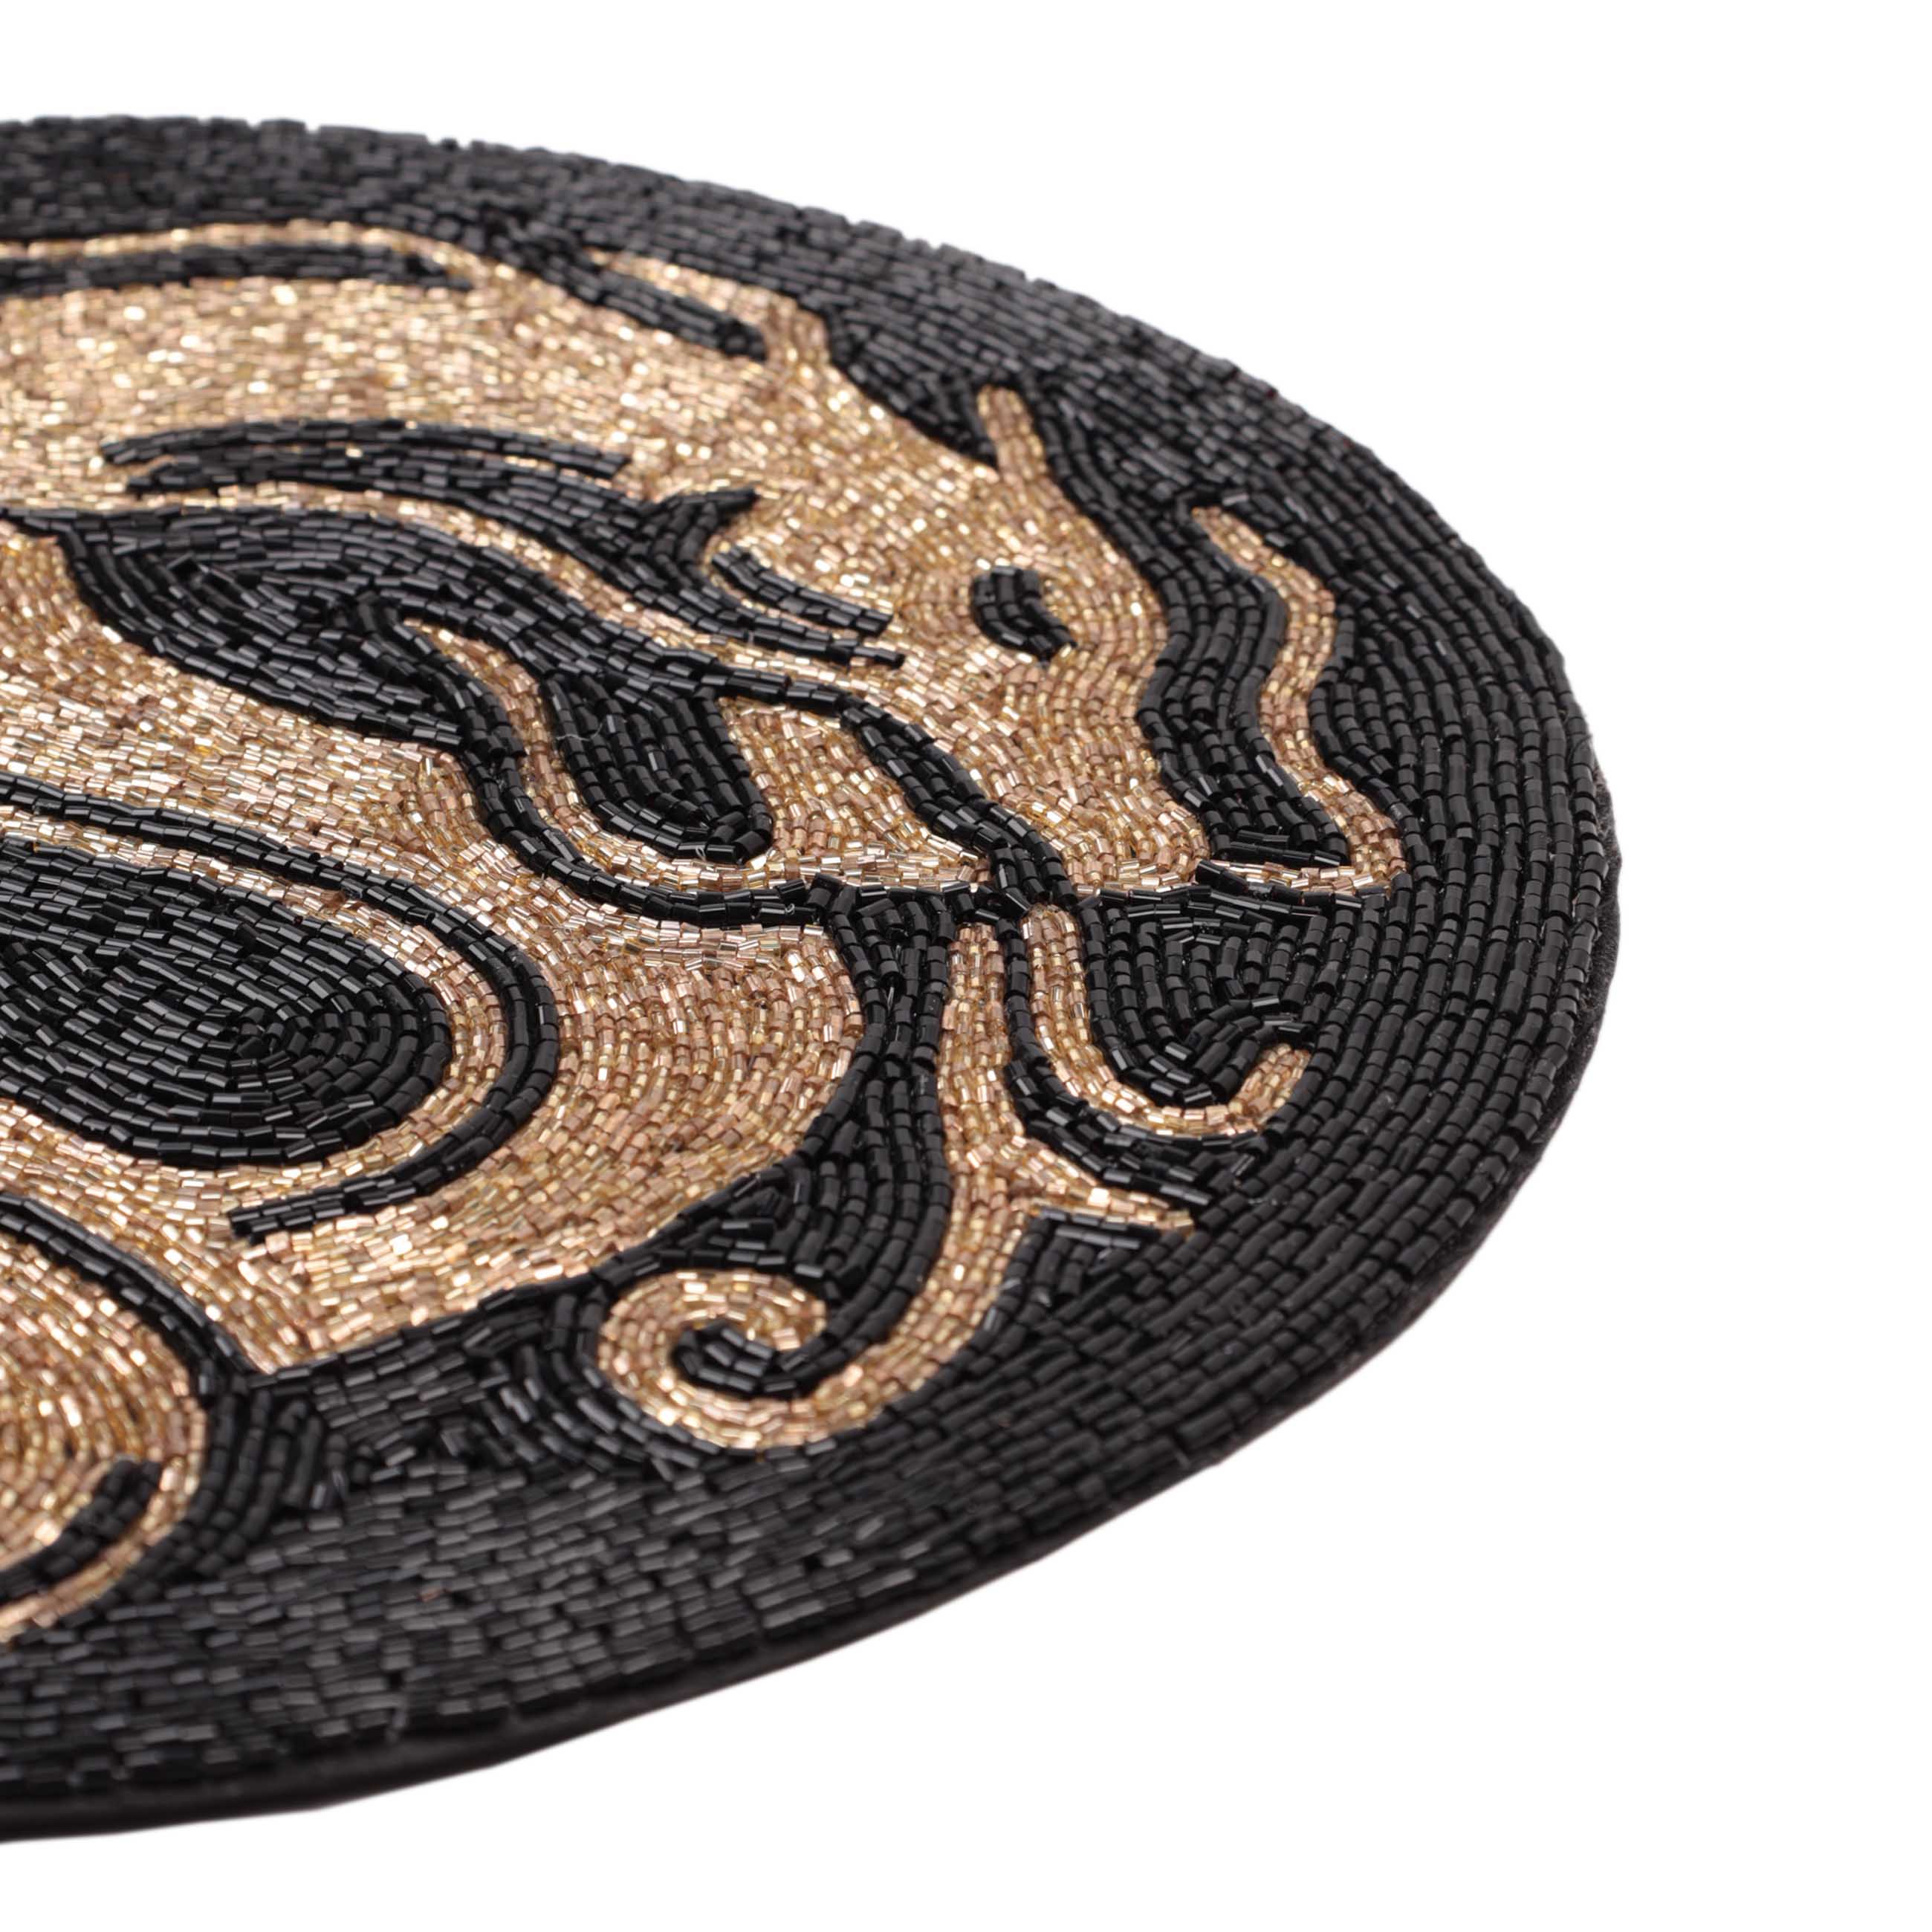 Салфетка под приборы, 36 см, бисер, круглая, золотисто-черная, Дракон, Art beads изображение № 2